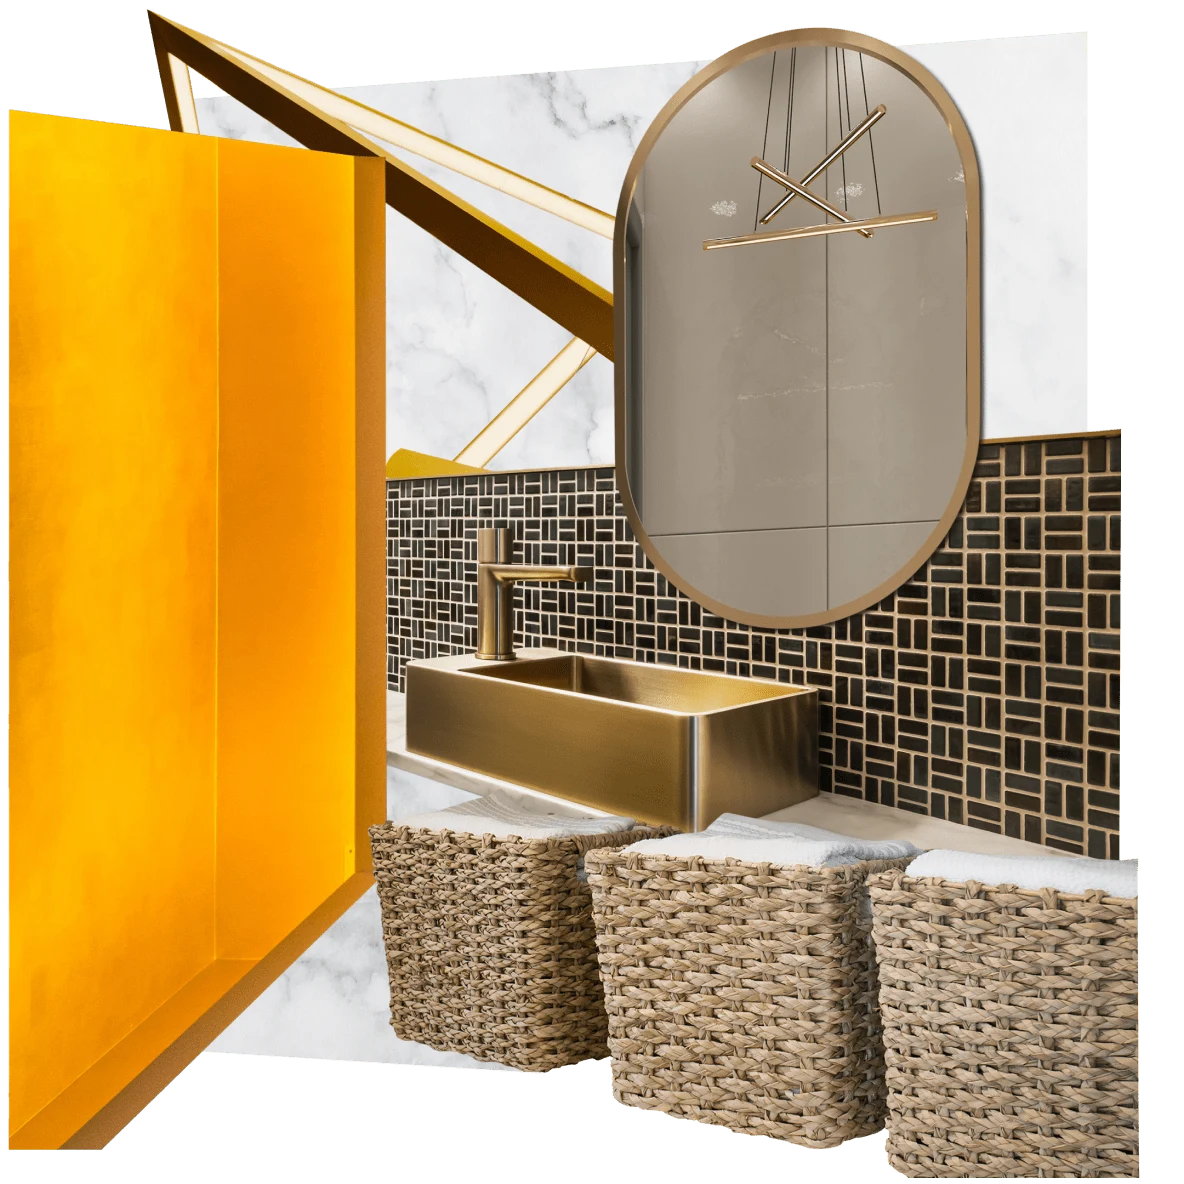 Collage di articoli per una lavanderia moderna: ceste in vimini con dentro degli asciugamani, una parete con piastrelle nere e dorate con un lavandino rettangolare dorato, uno specchio tondeggiante e una parete arancione.